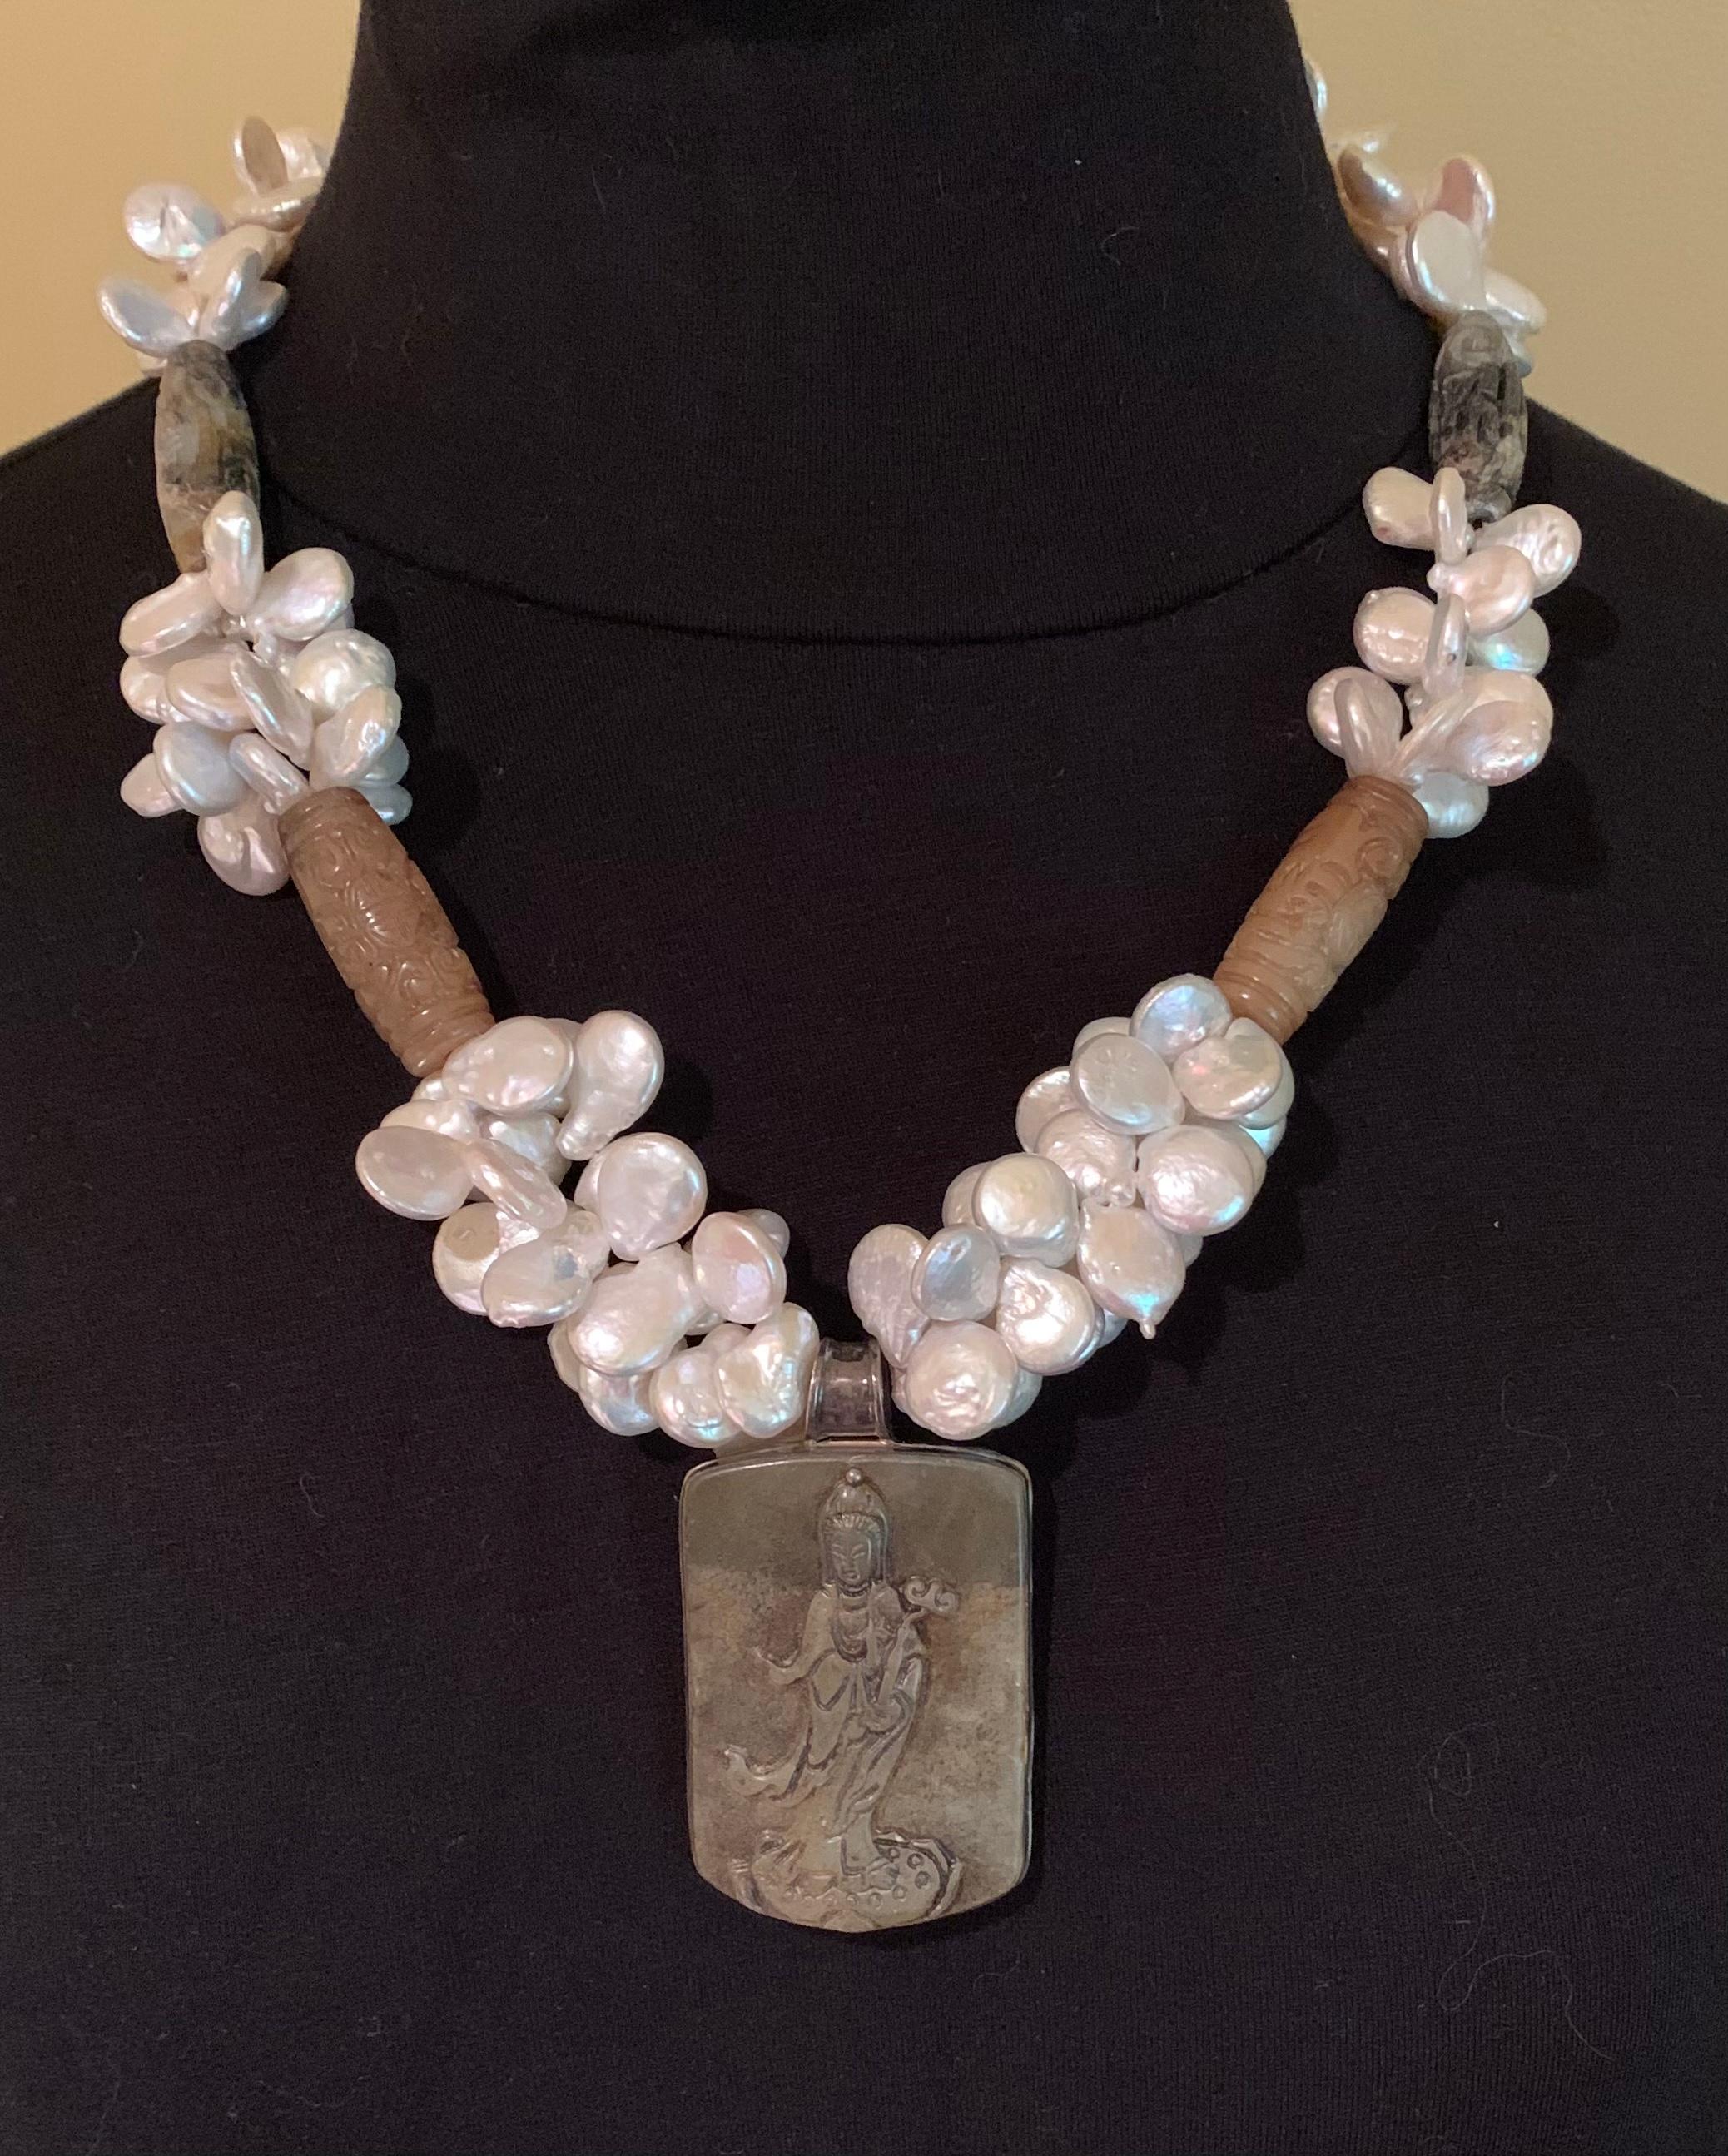 Nachlass A. Jeschel Asiatisches Jade-Motiv, Keshi-Perle und Tigerauge Statement-Halskette.
Der zentrale Jade-Anhänger zeigt Guan Yin, die Göttin des Mitgefühls und der Weisheit, mit einer Fülle von schönen Keshi-Perlen in wolkenähnlichen Formationen